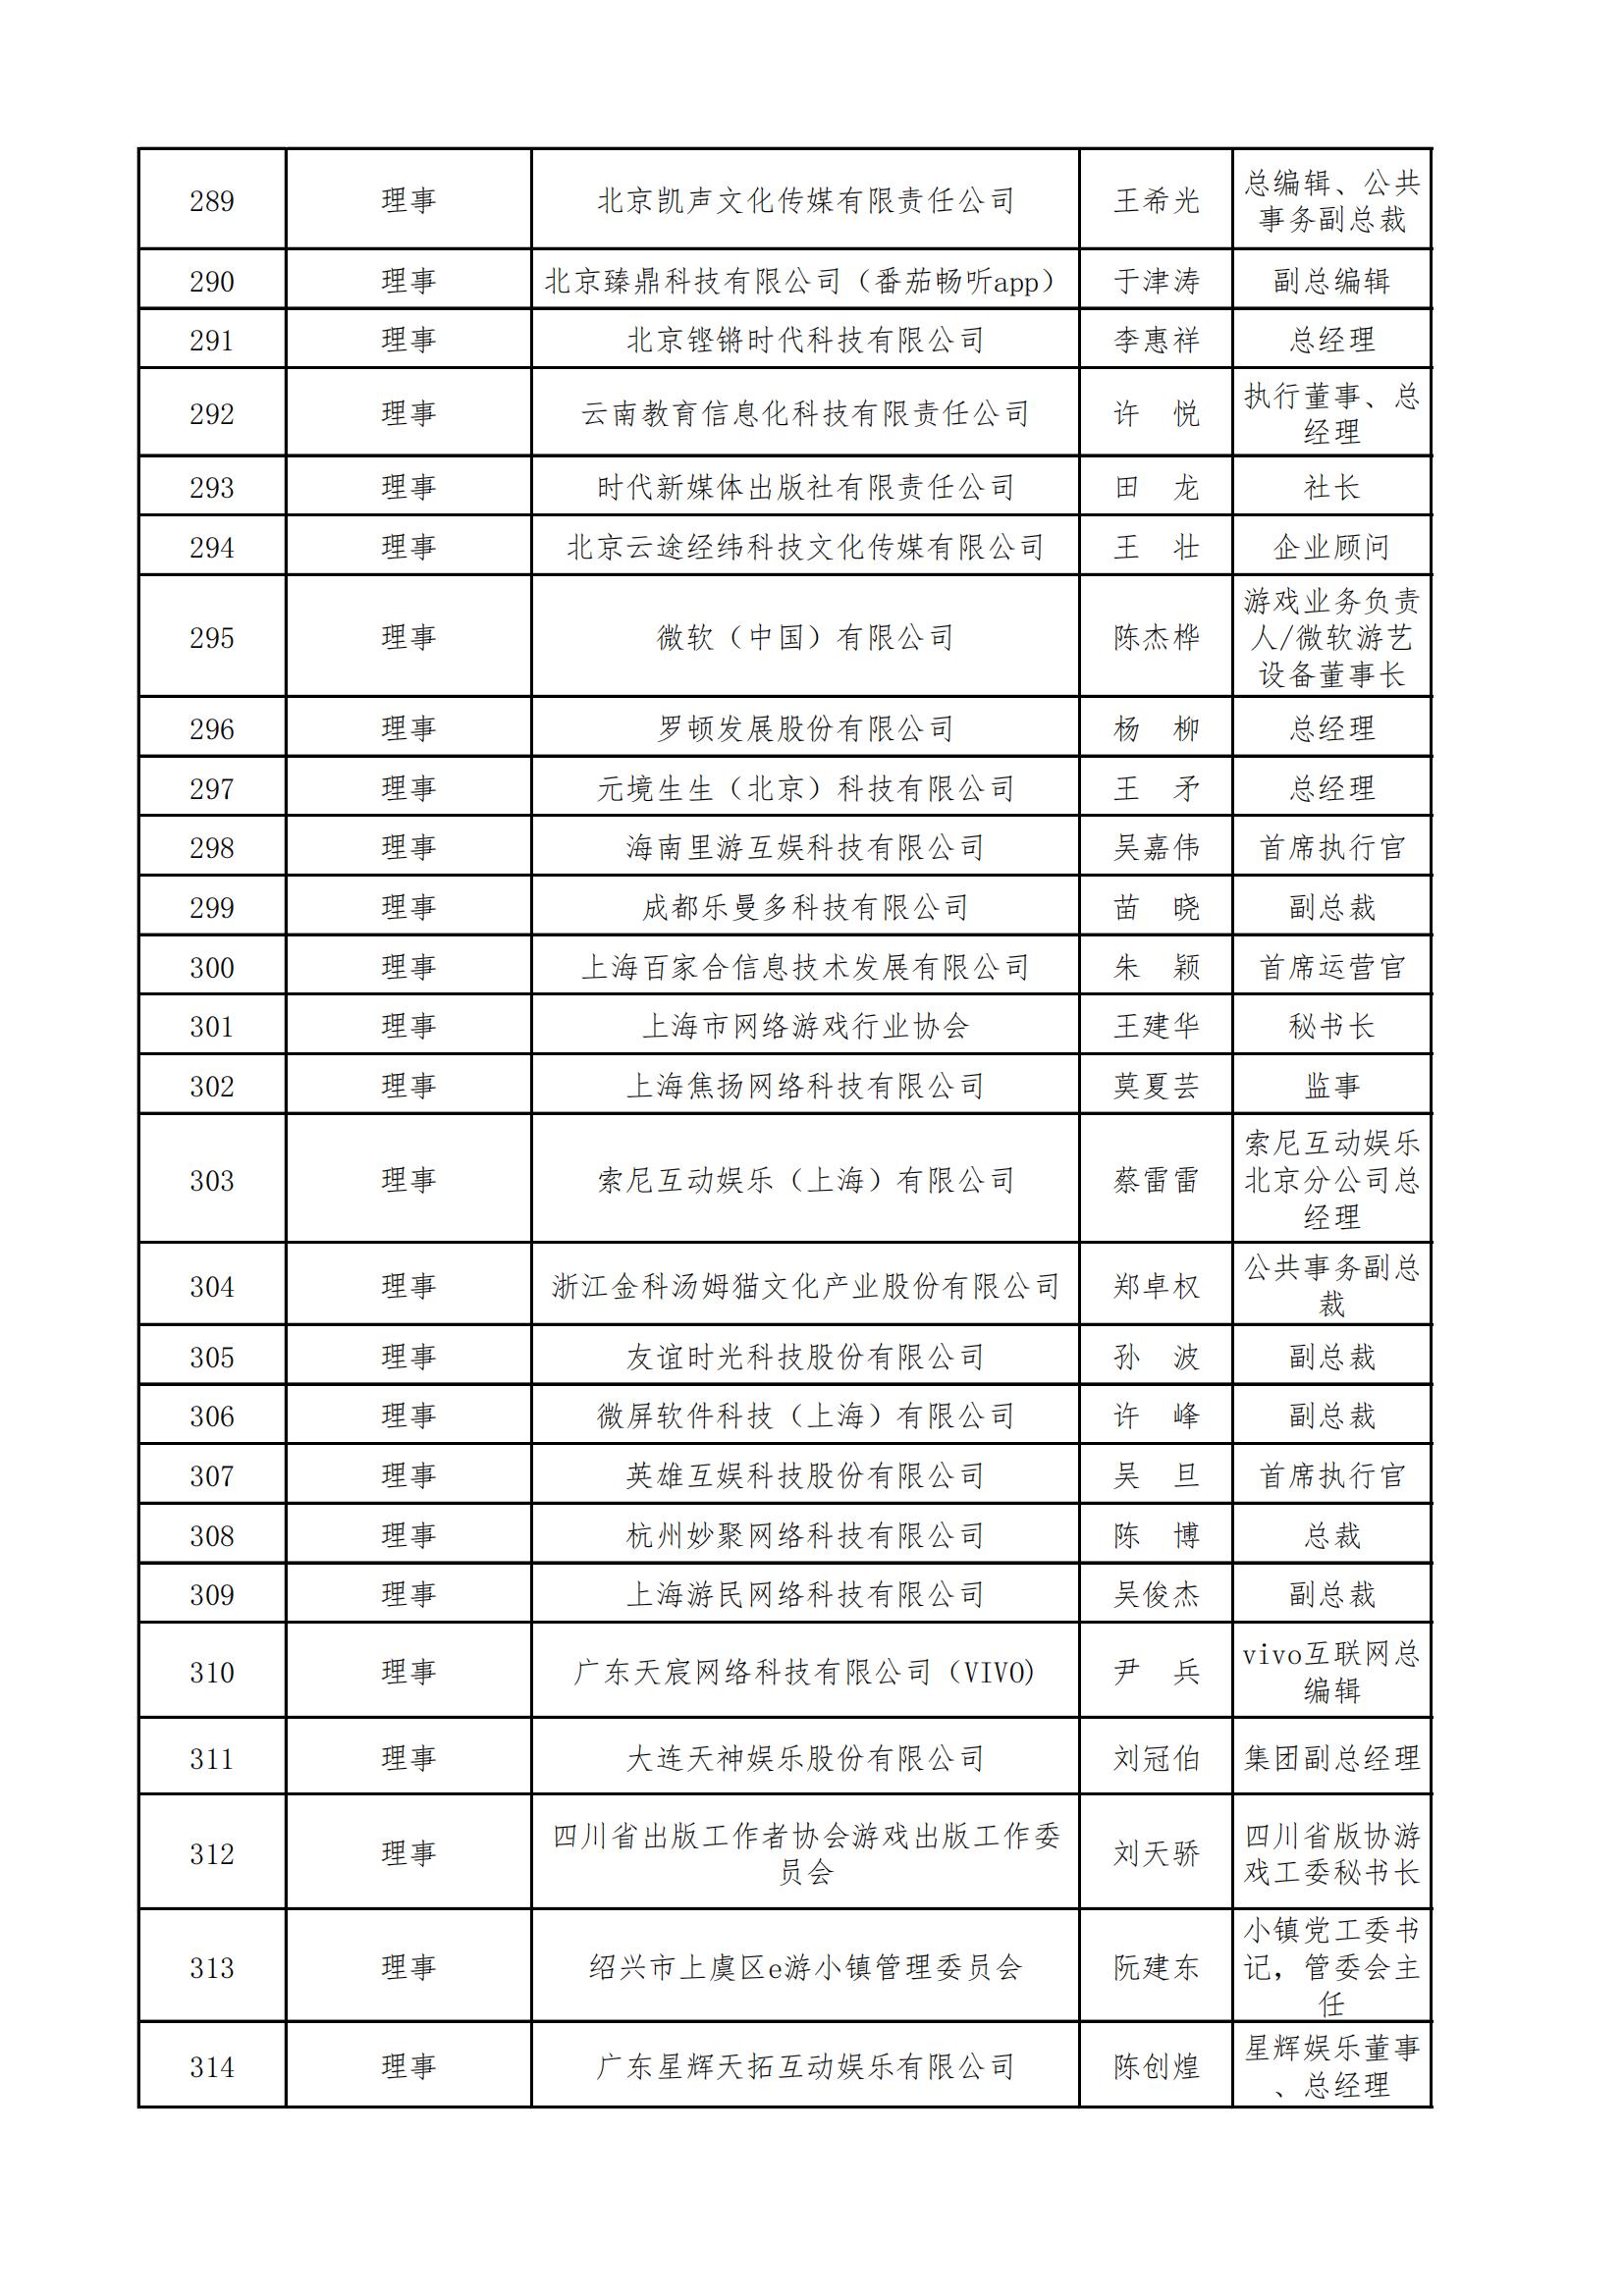 中國音像與數字出版協會第五屆理事會名錄_10.jpg